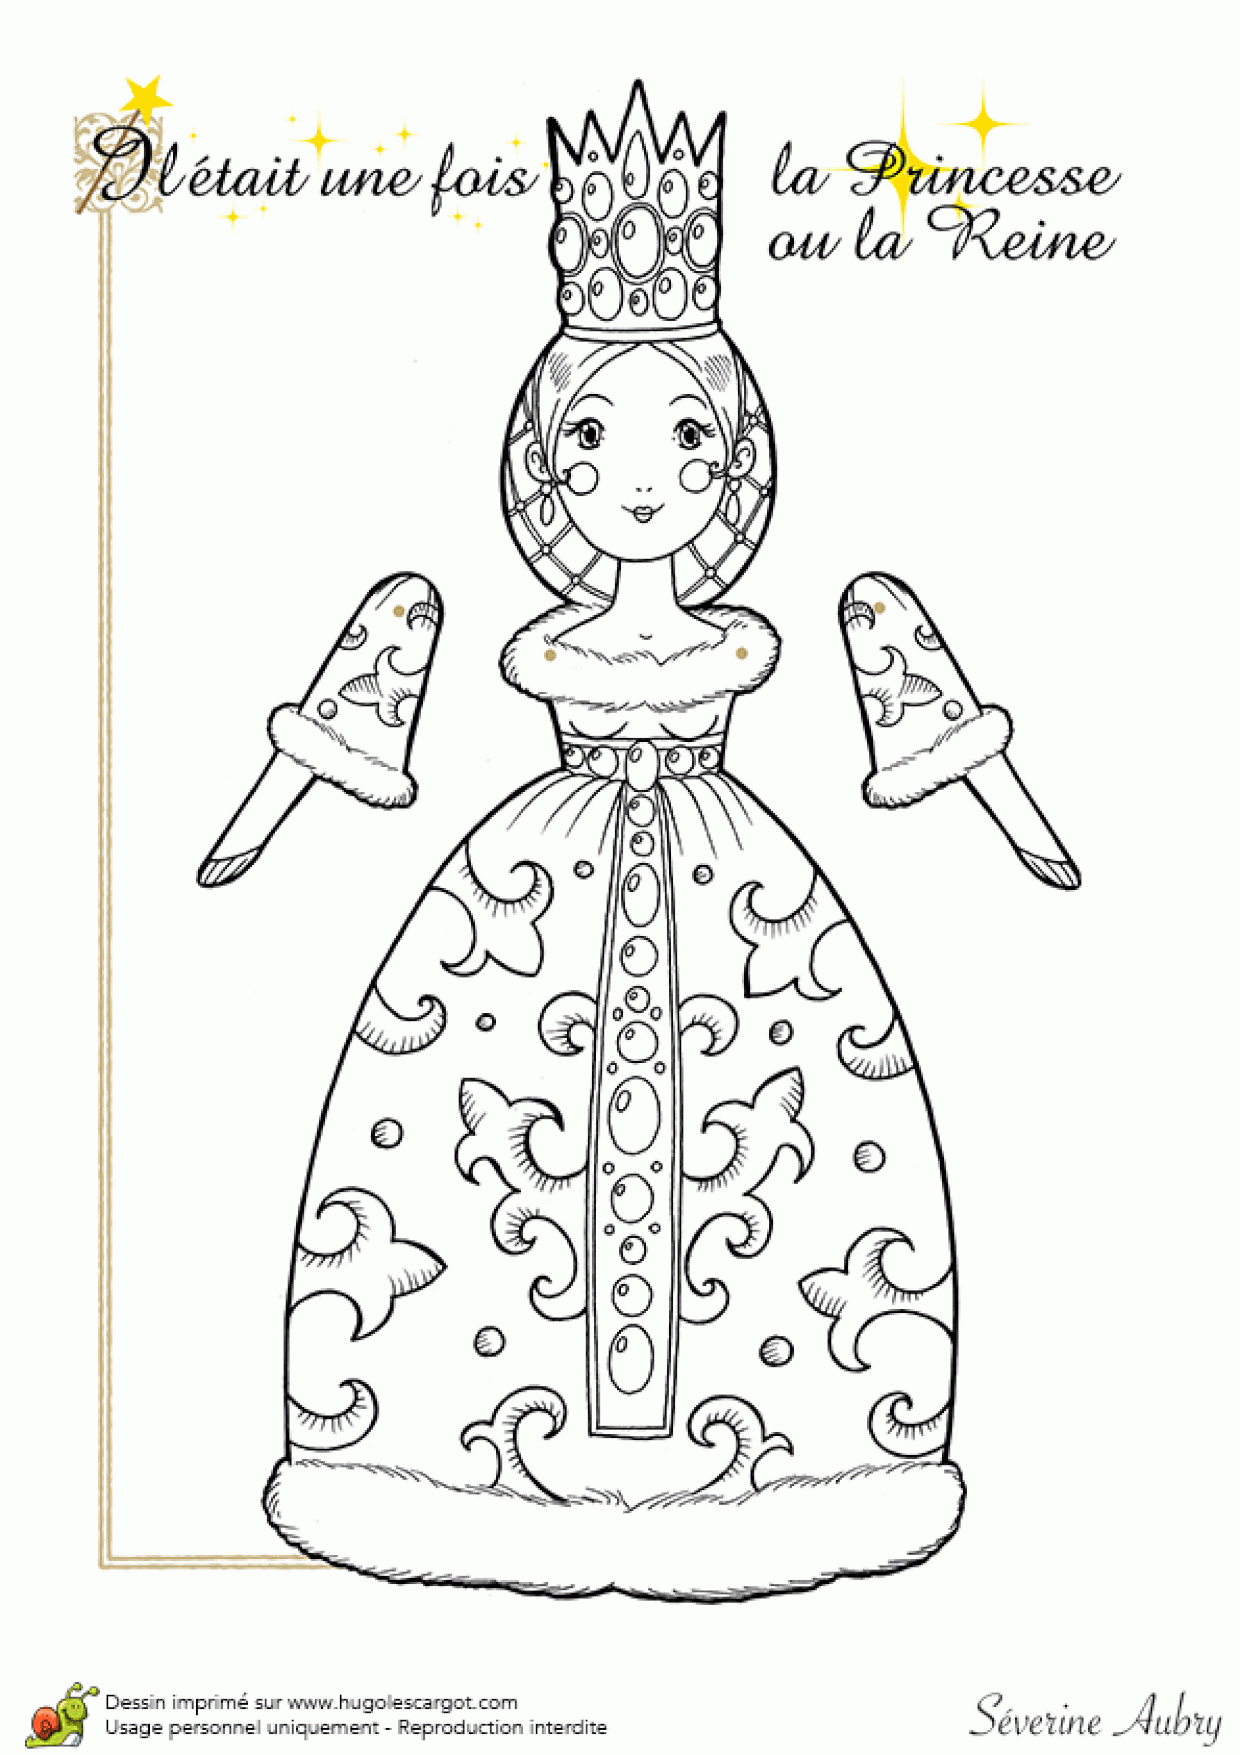 Coloriage D&amp;#039;une Marionnette Articulée, Princesse Ou Reine avec Pantins Articulés À Imprimer 